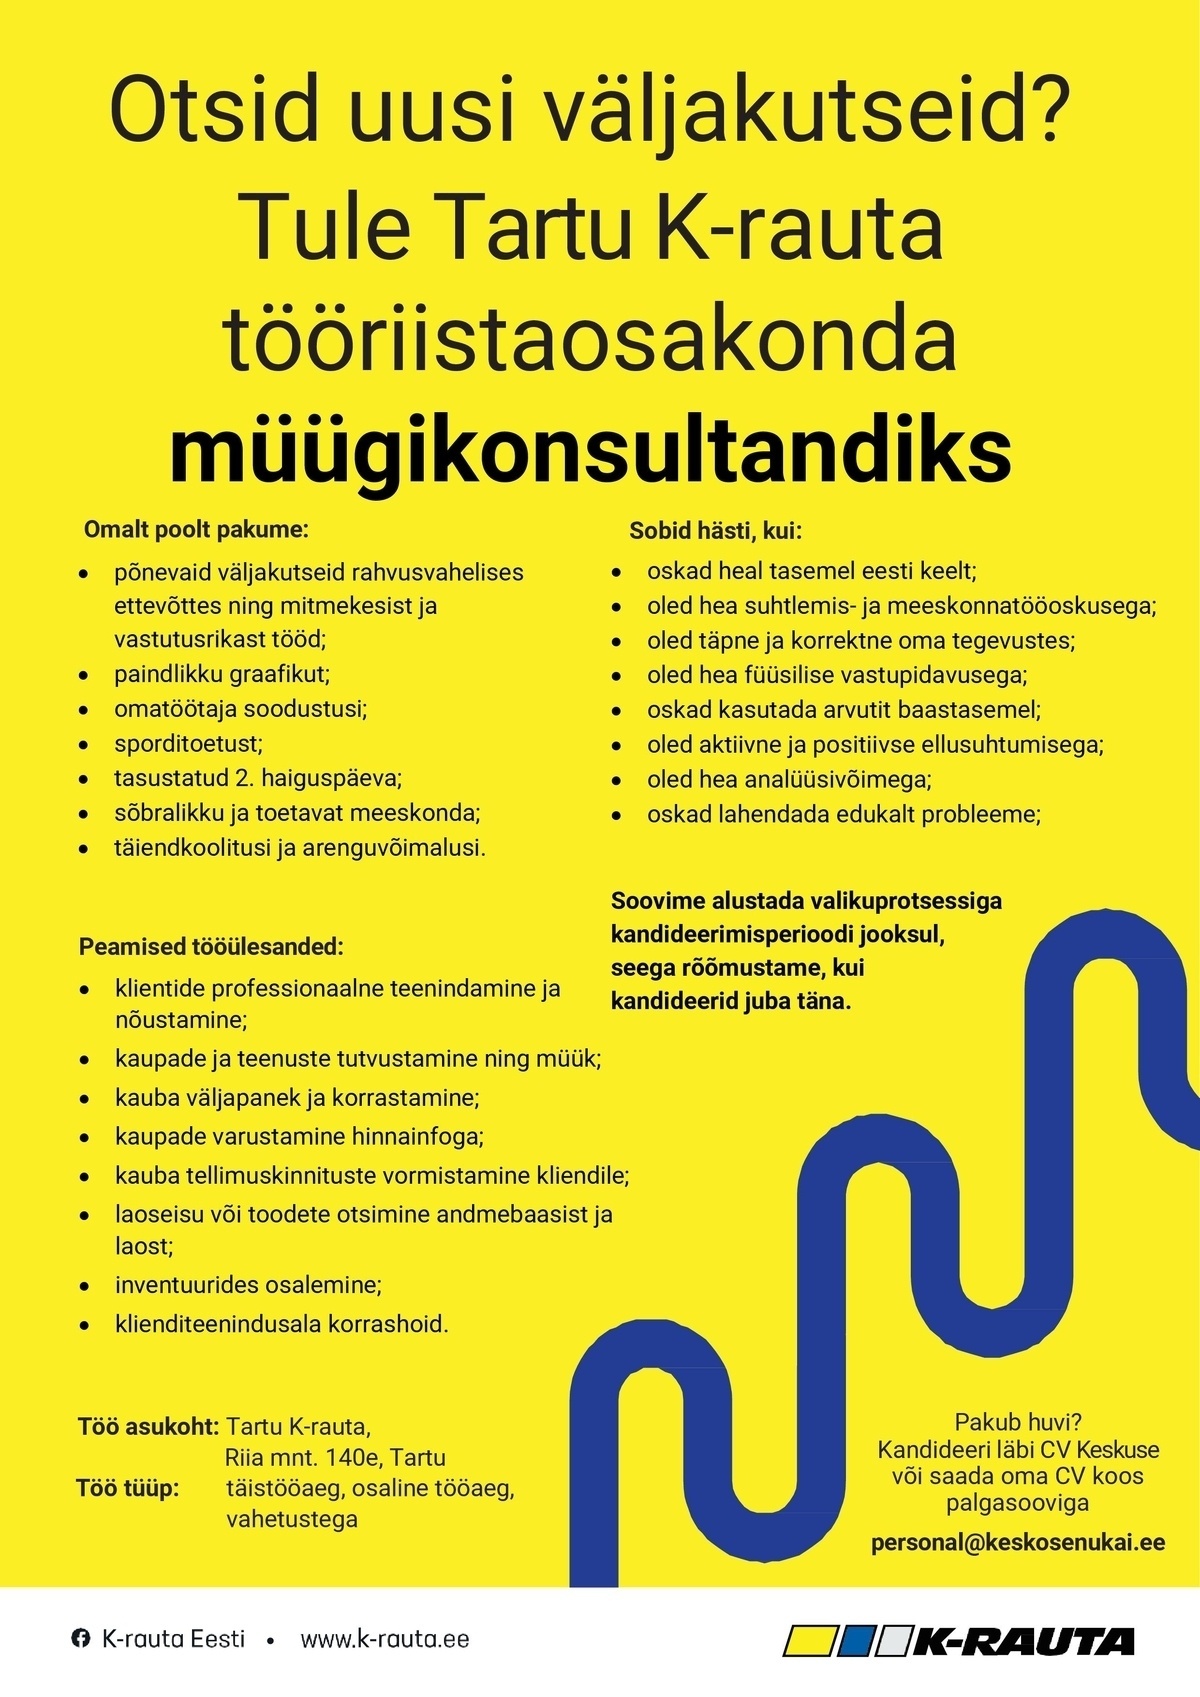 Kesko Senukai Estonia AS Müügikonsultant Tartu K-rauta tööriistaosakonda